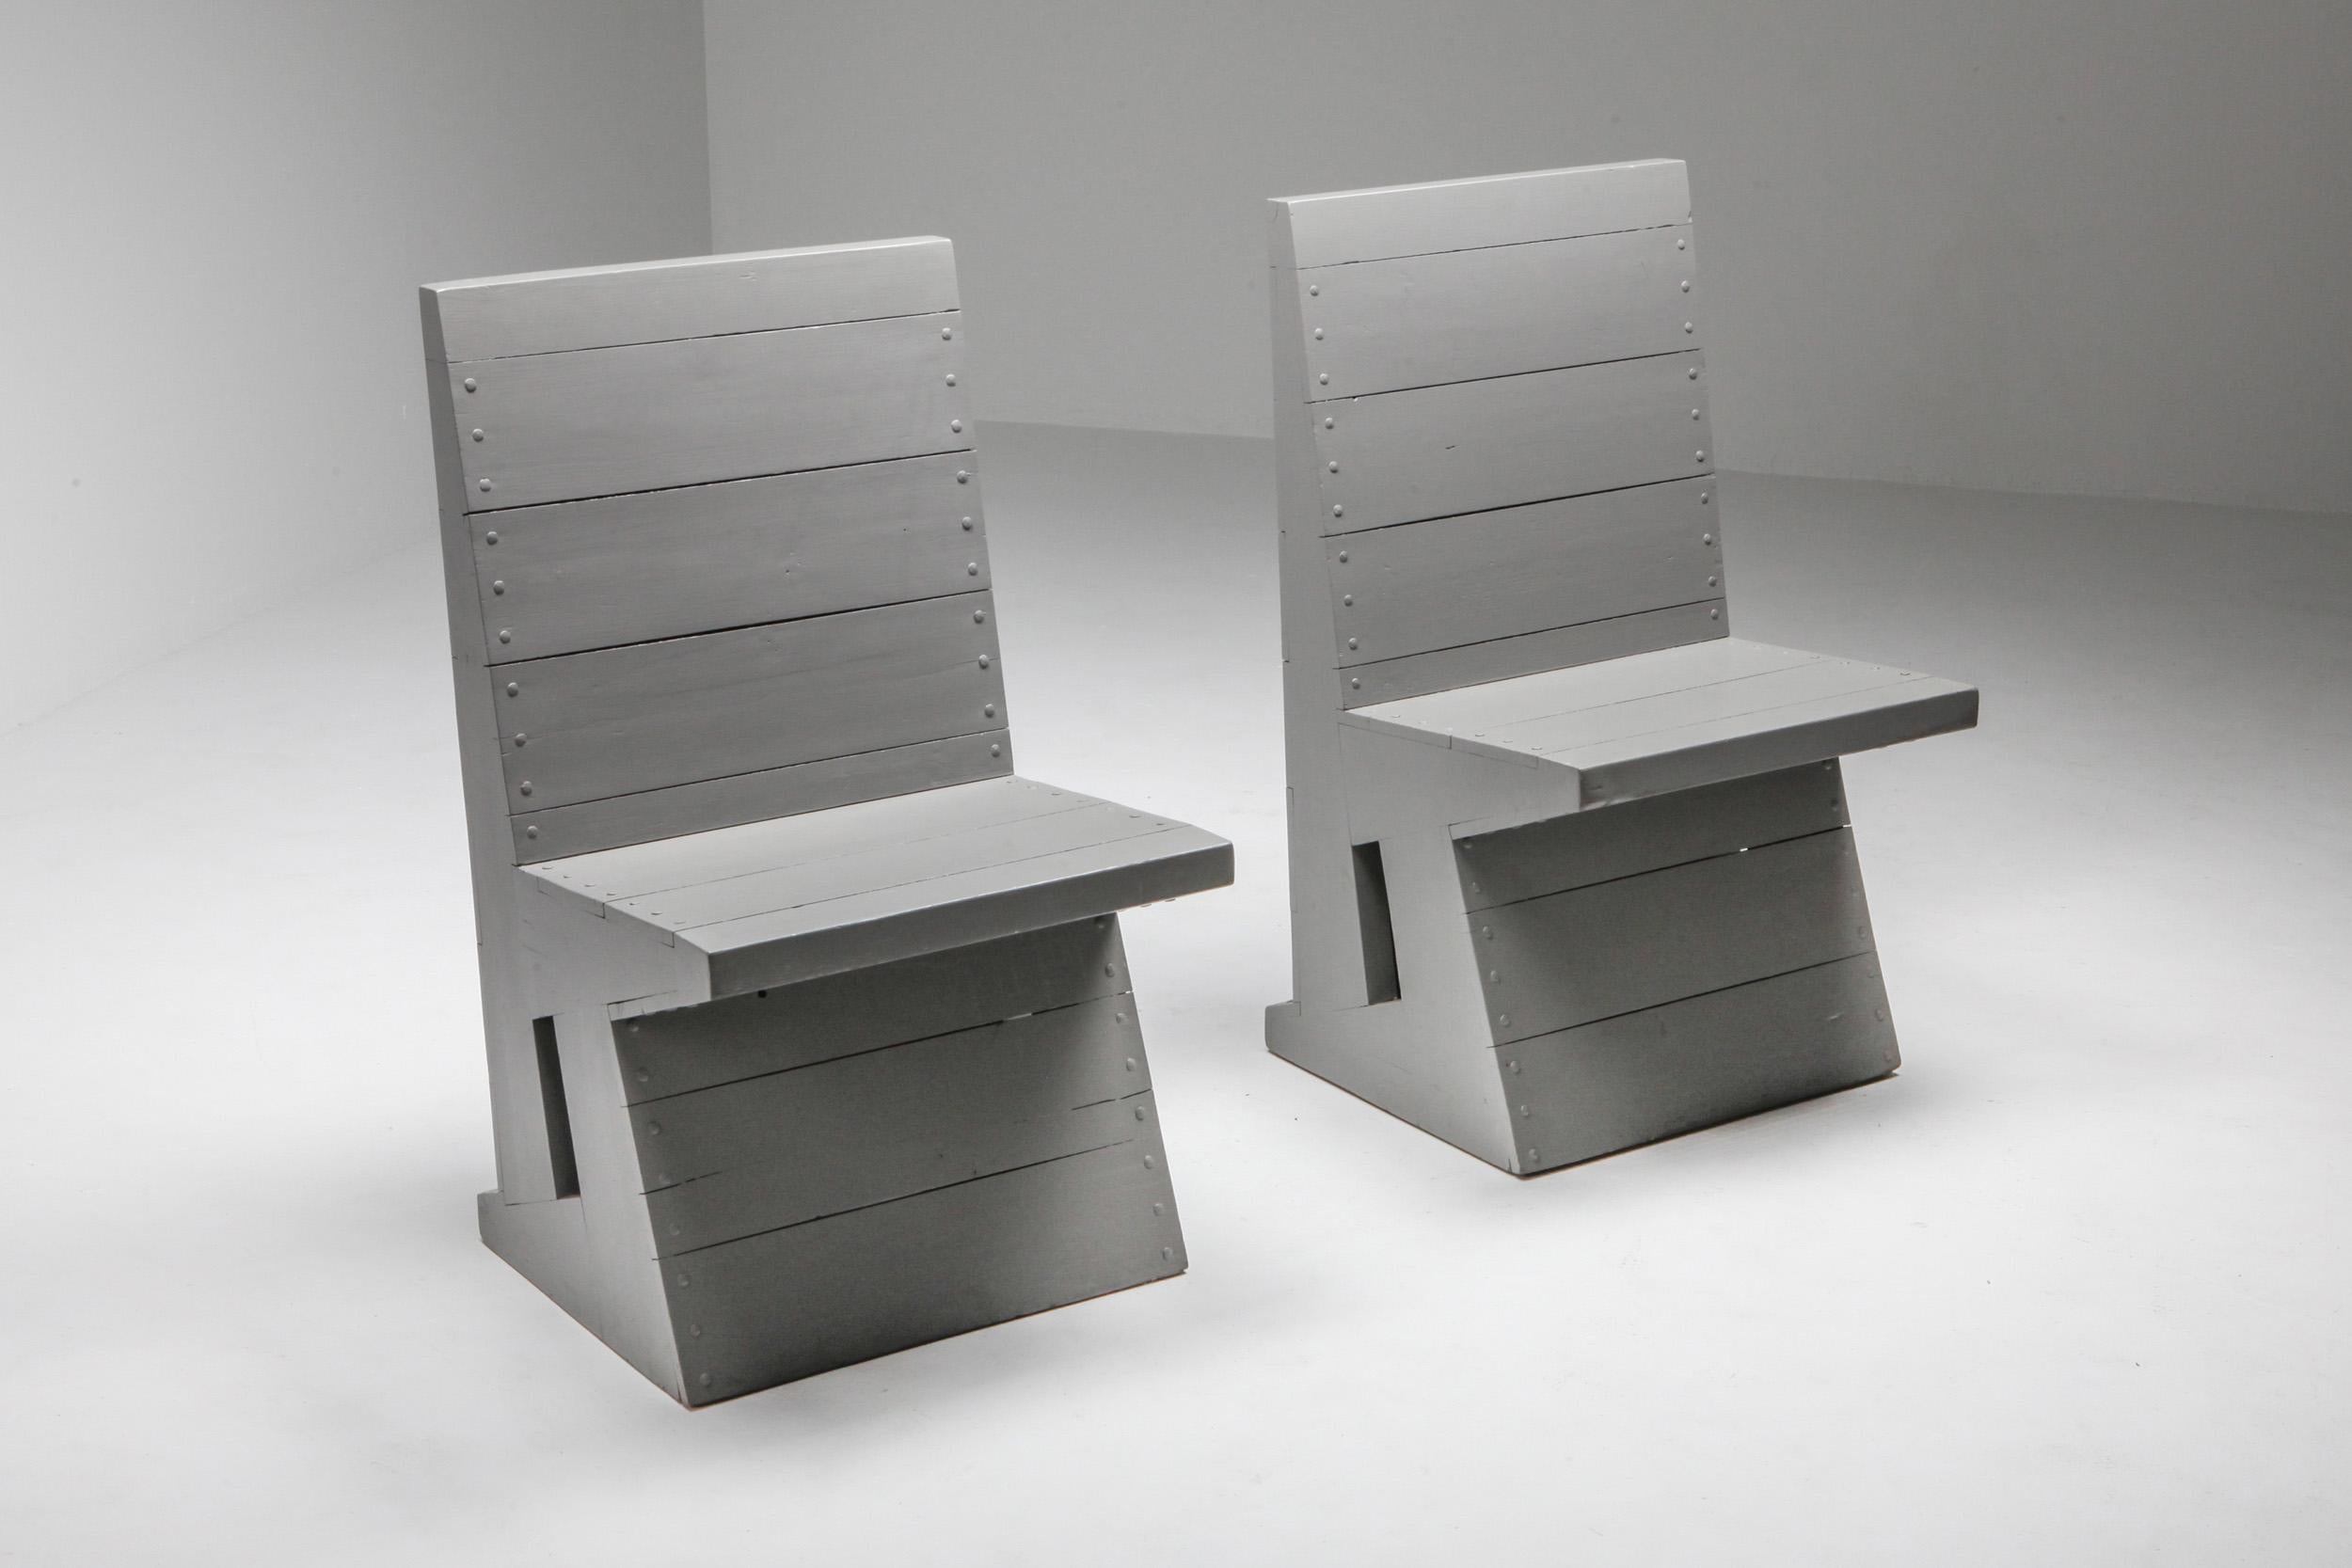 Dom Hans Van Der Laan Chairs, Bossche School, Dutch Design, 1960s For Sale 1